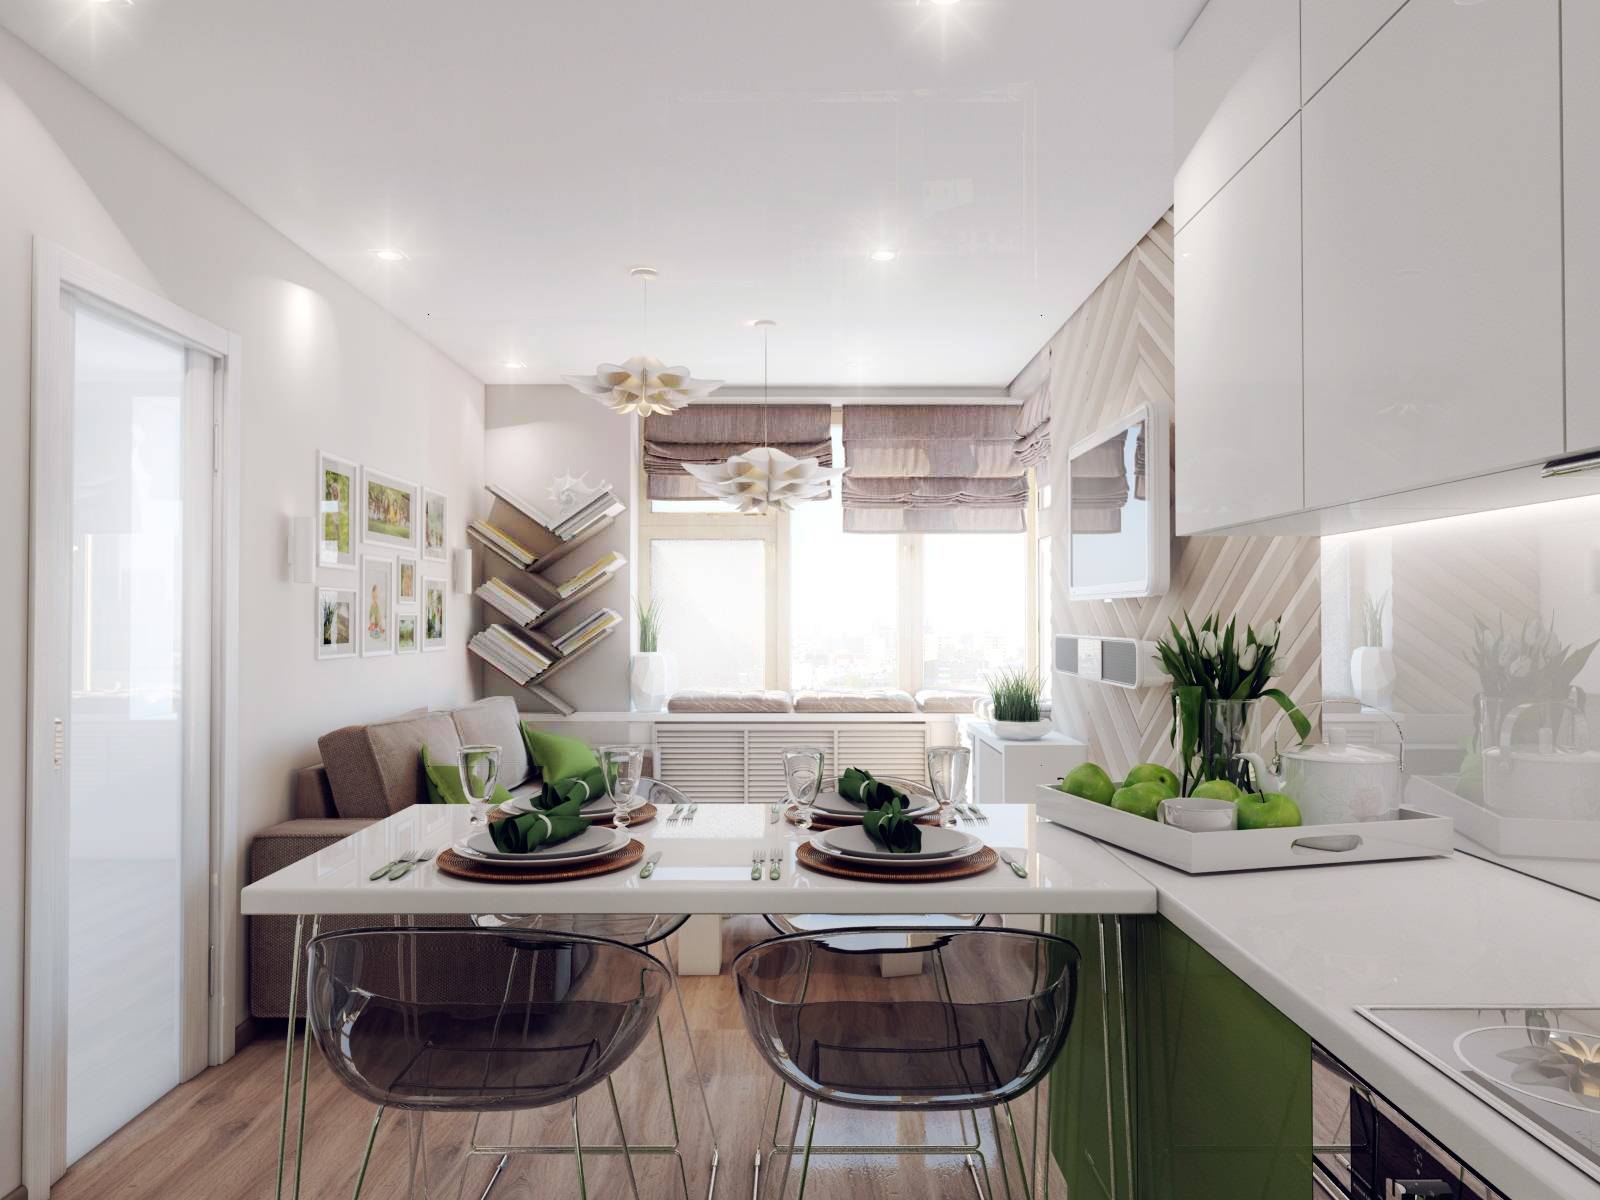 Дизайн интерьера кухни 15 кв м: модные планировки и цвета - статьи и советы на furnishhome.ru